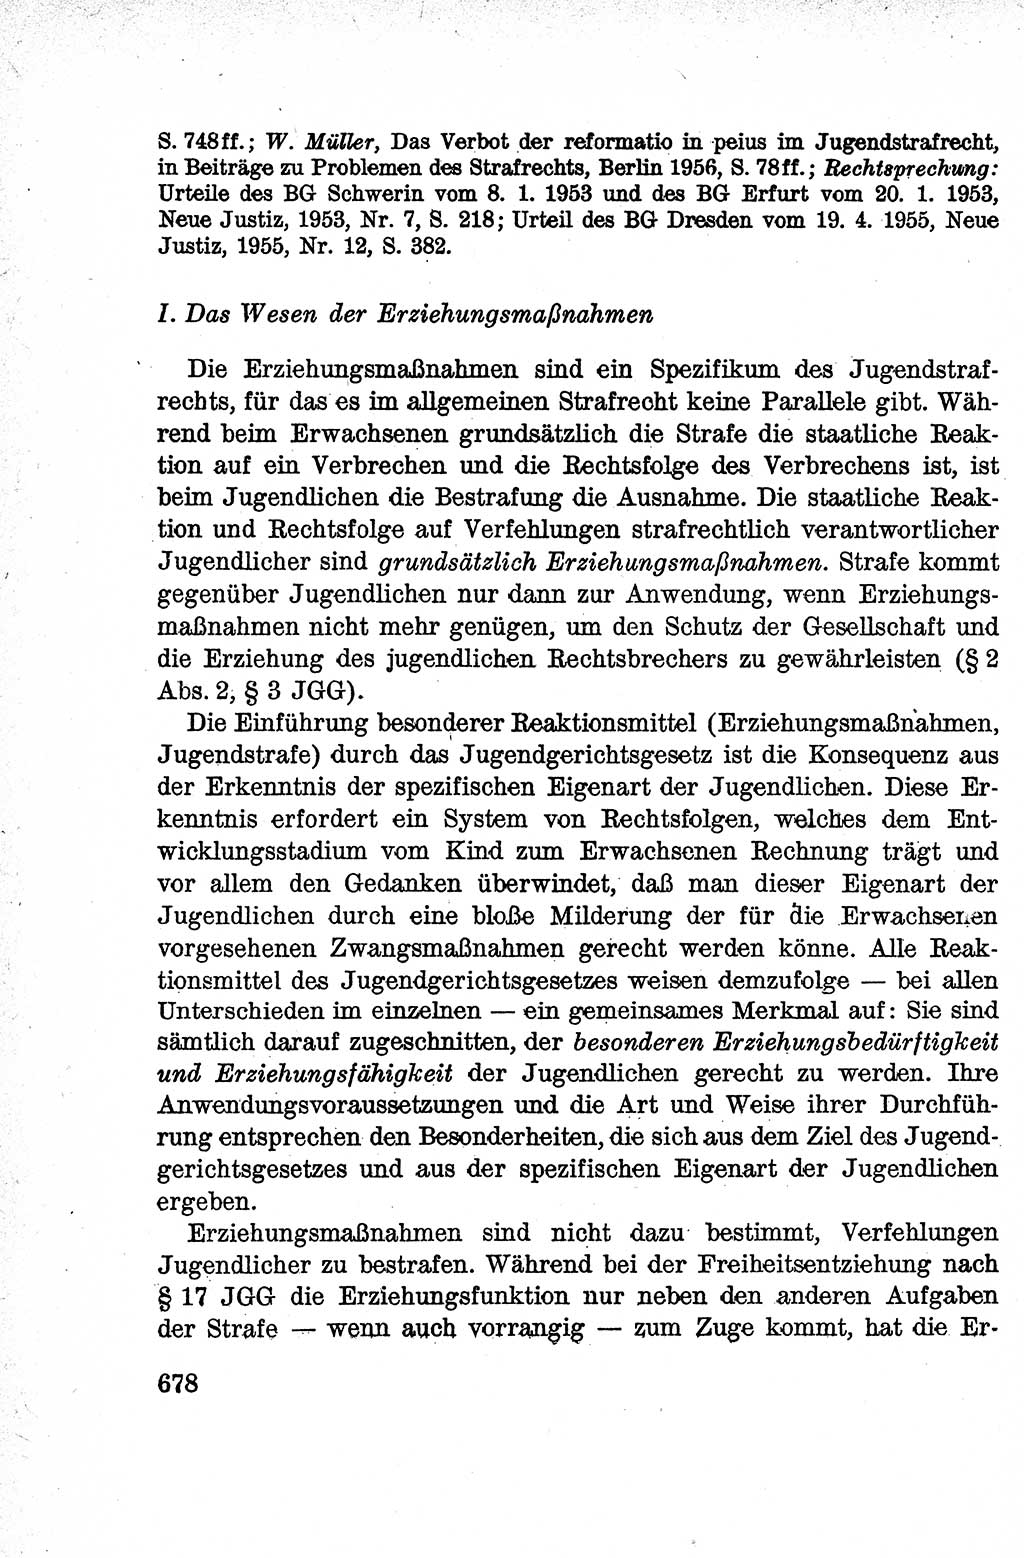 Lehrbuch des Strafrechts der Deutschen Demokratischen Republik (DDR), Allgemeiner Teil 1959, Seite 678 (Lb. Strafr. DDR AT 1959, S. 678)